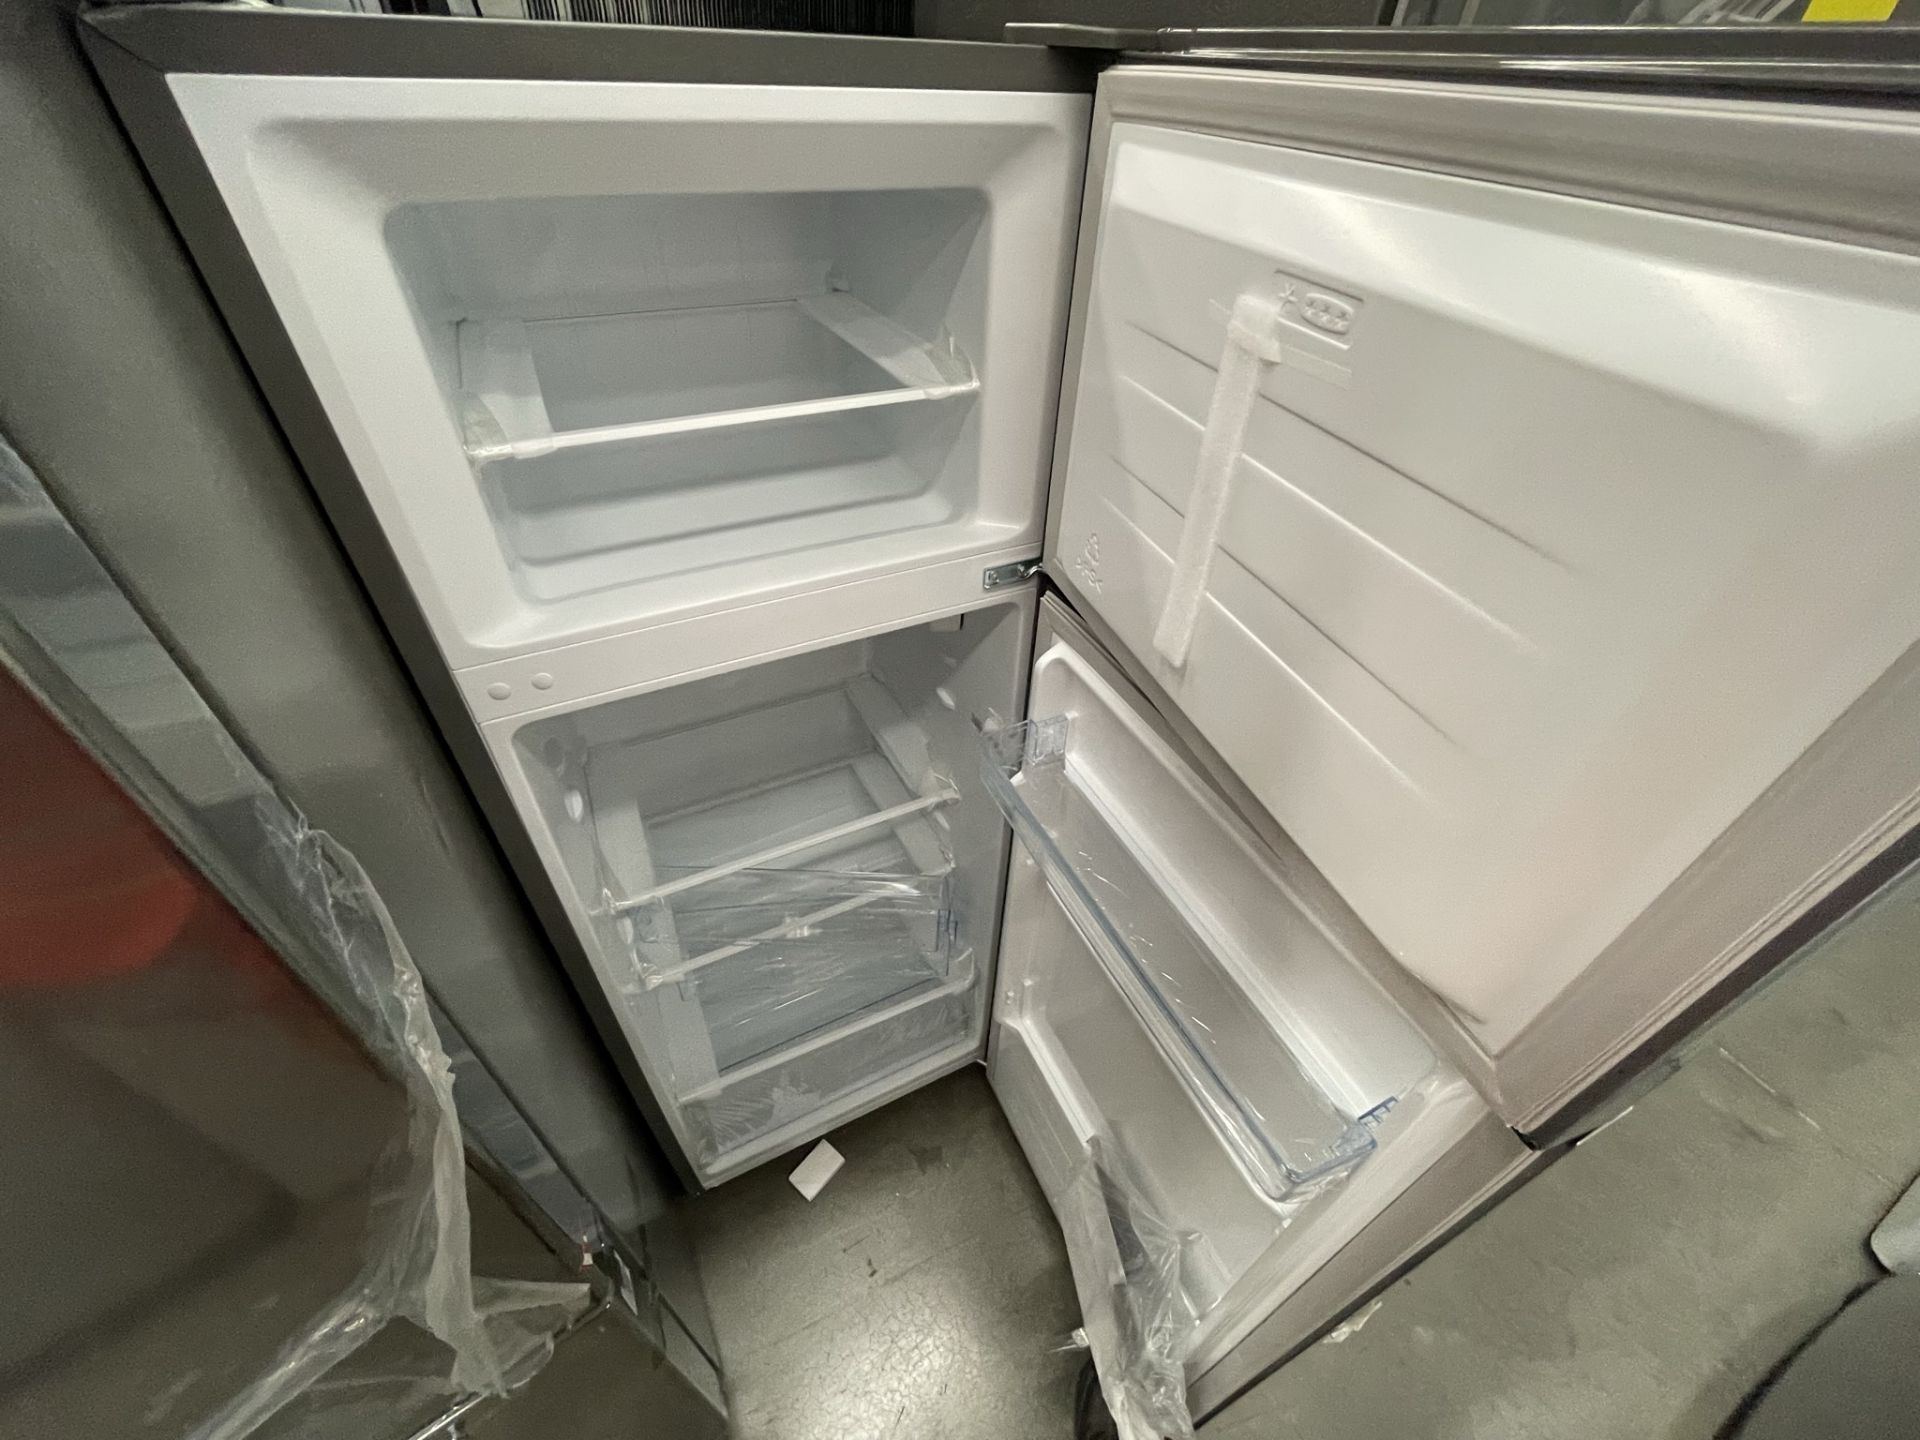 (EQUIPO NUEVO) Lote De 2 Refrigeradores Contiene: 1 Refrigerador Marca LG, Modelo GM29BP, Serie208M - Image 15 of 16